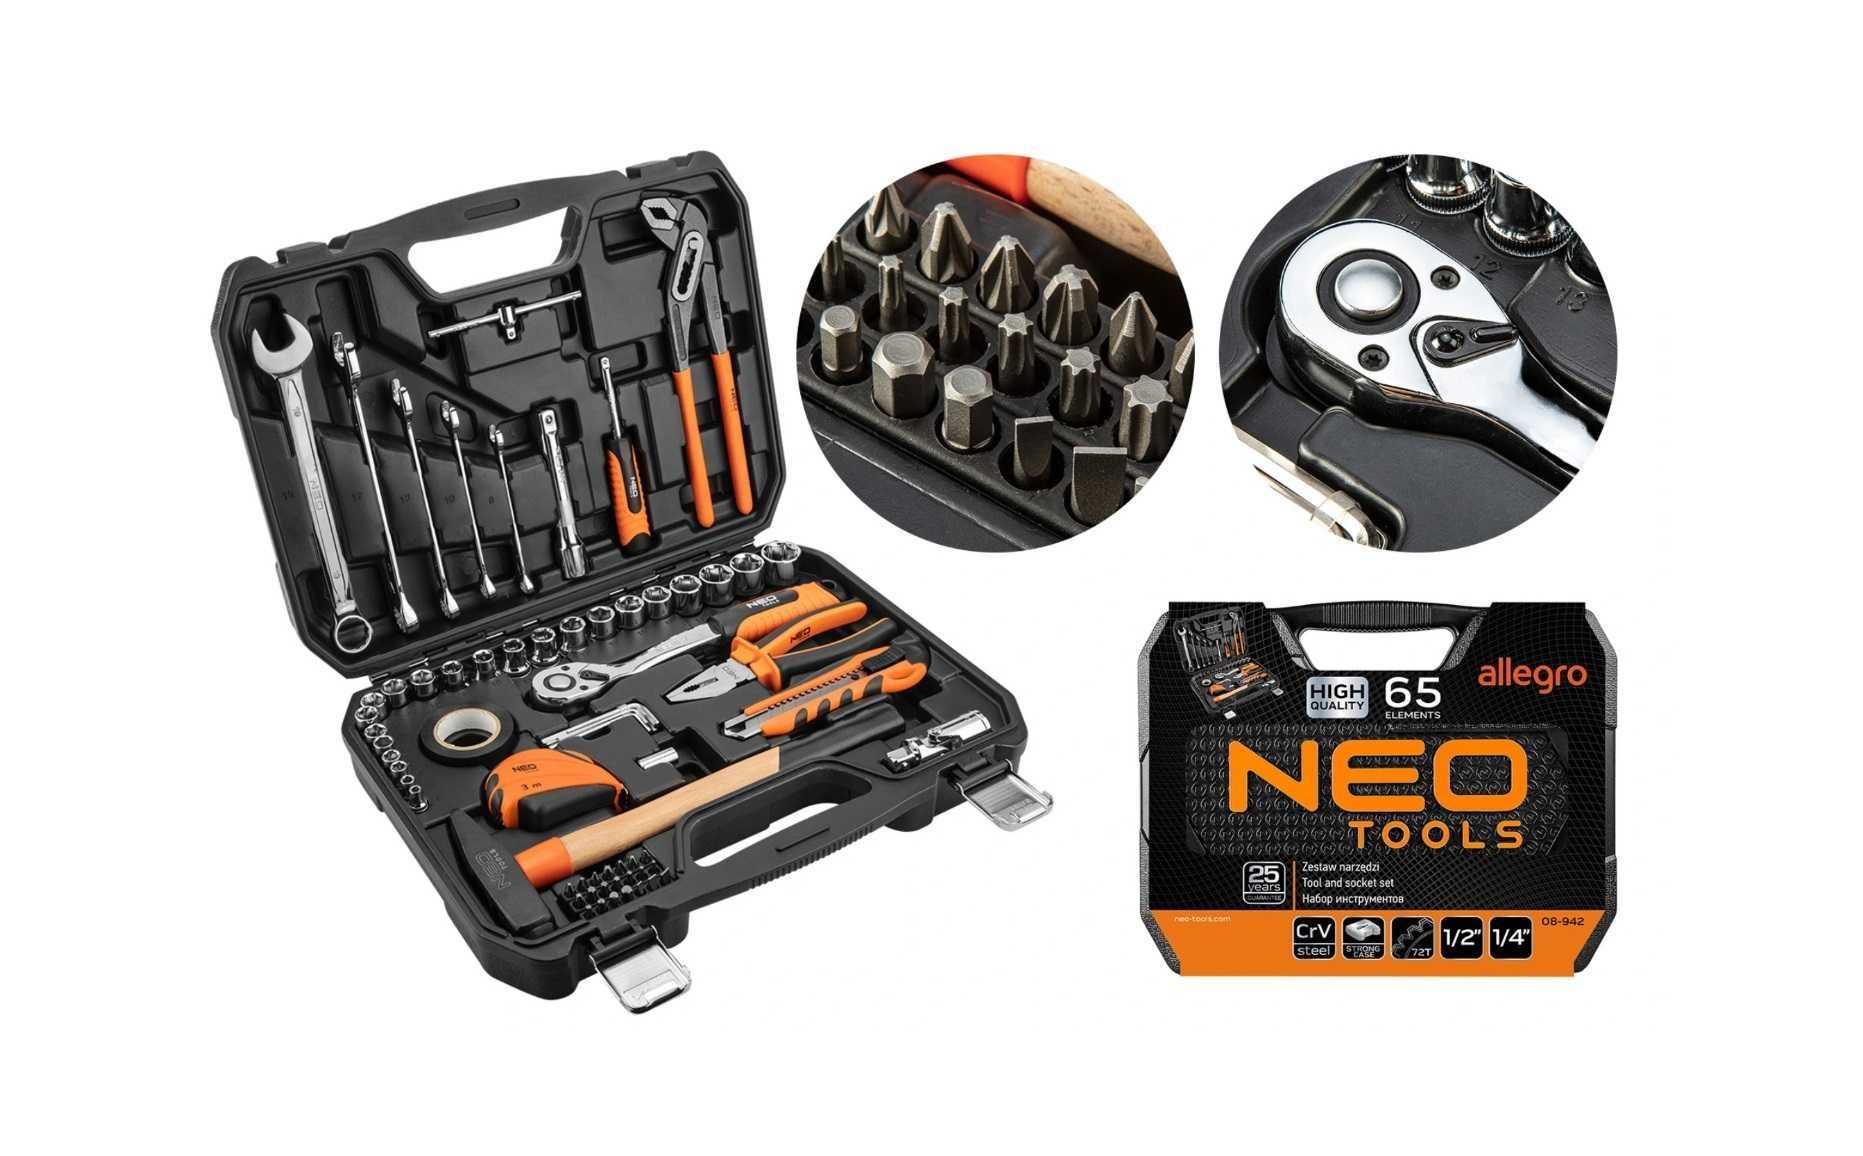 Zestaw narzędzi Neo Tools 65 elementów nowy komplet gwarancja